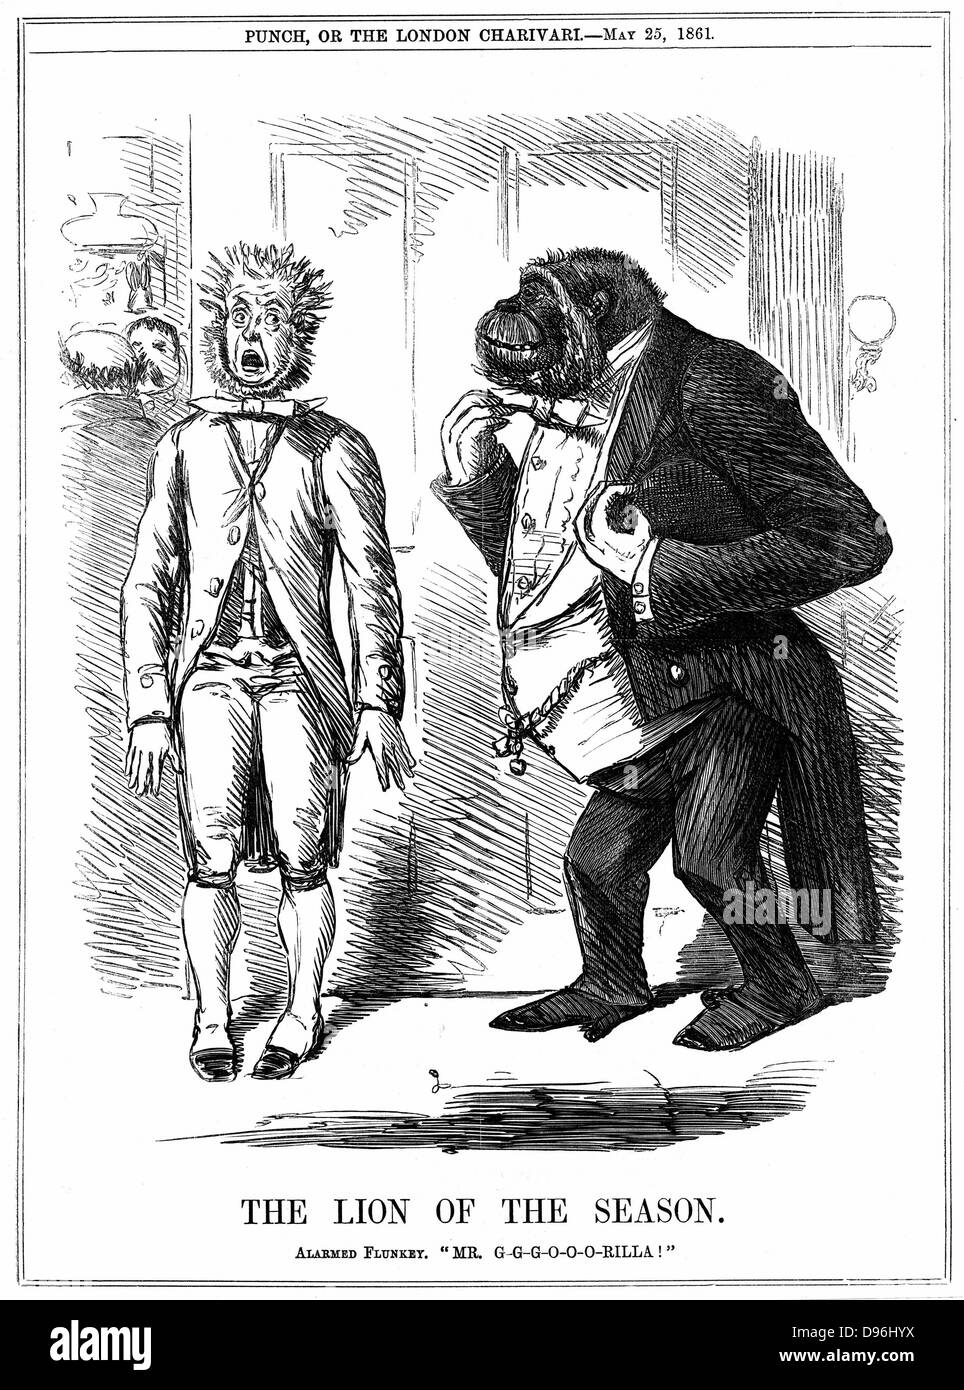 Der Löwe der Saison": John Lauge Karikatur aus "Punch" London, 25. Mai 1861, während die Kontroverse über Darwins "Entstehung der Arten" wütete. Gravur Stockfoto